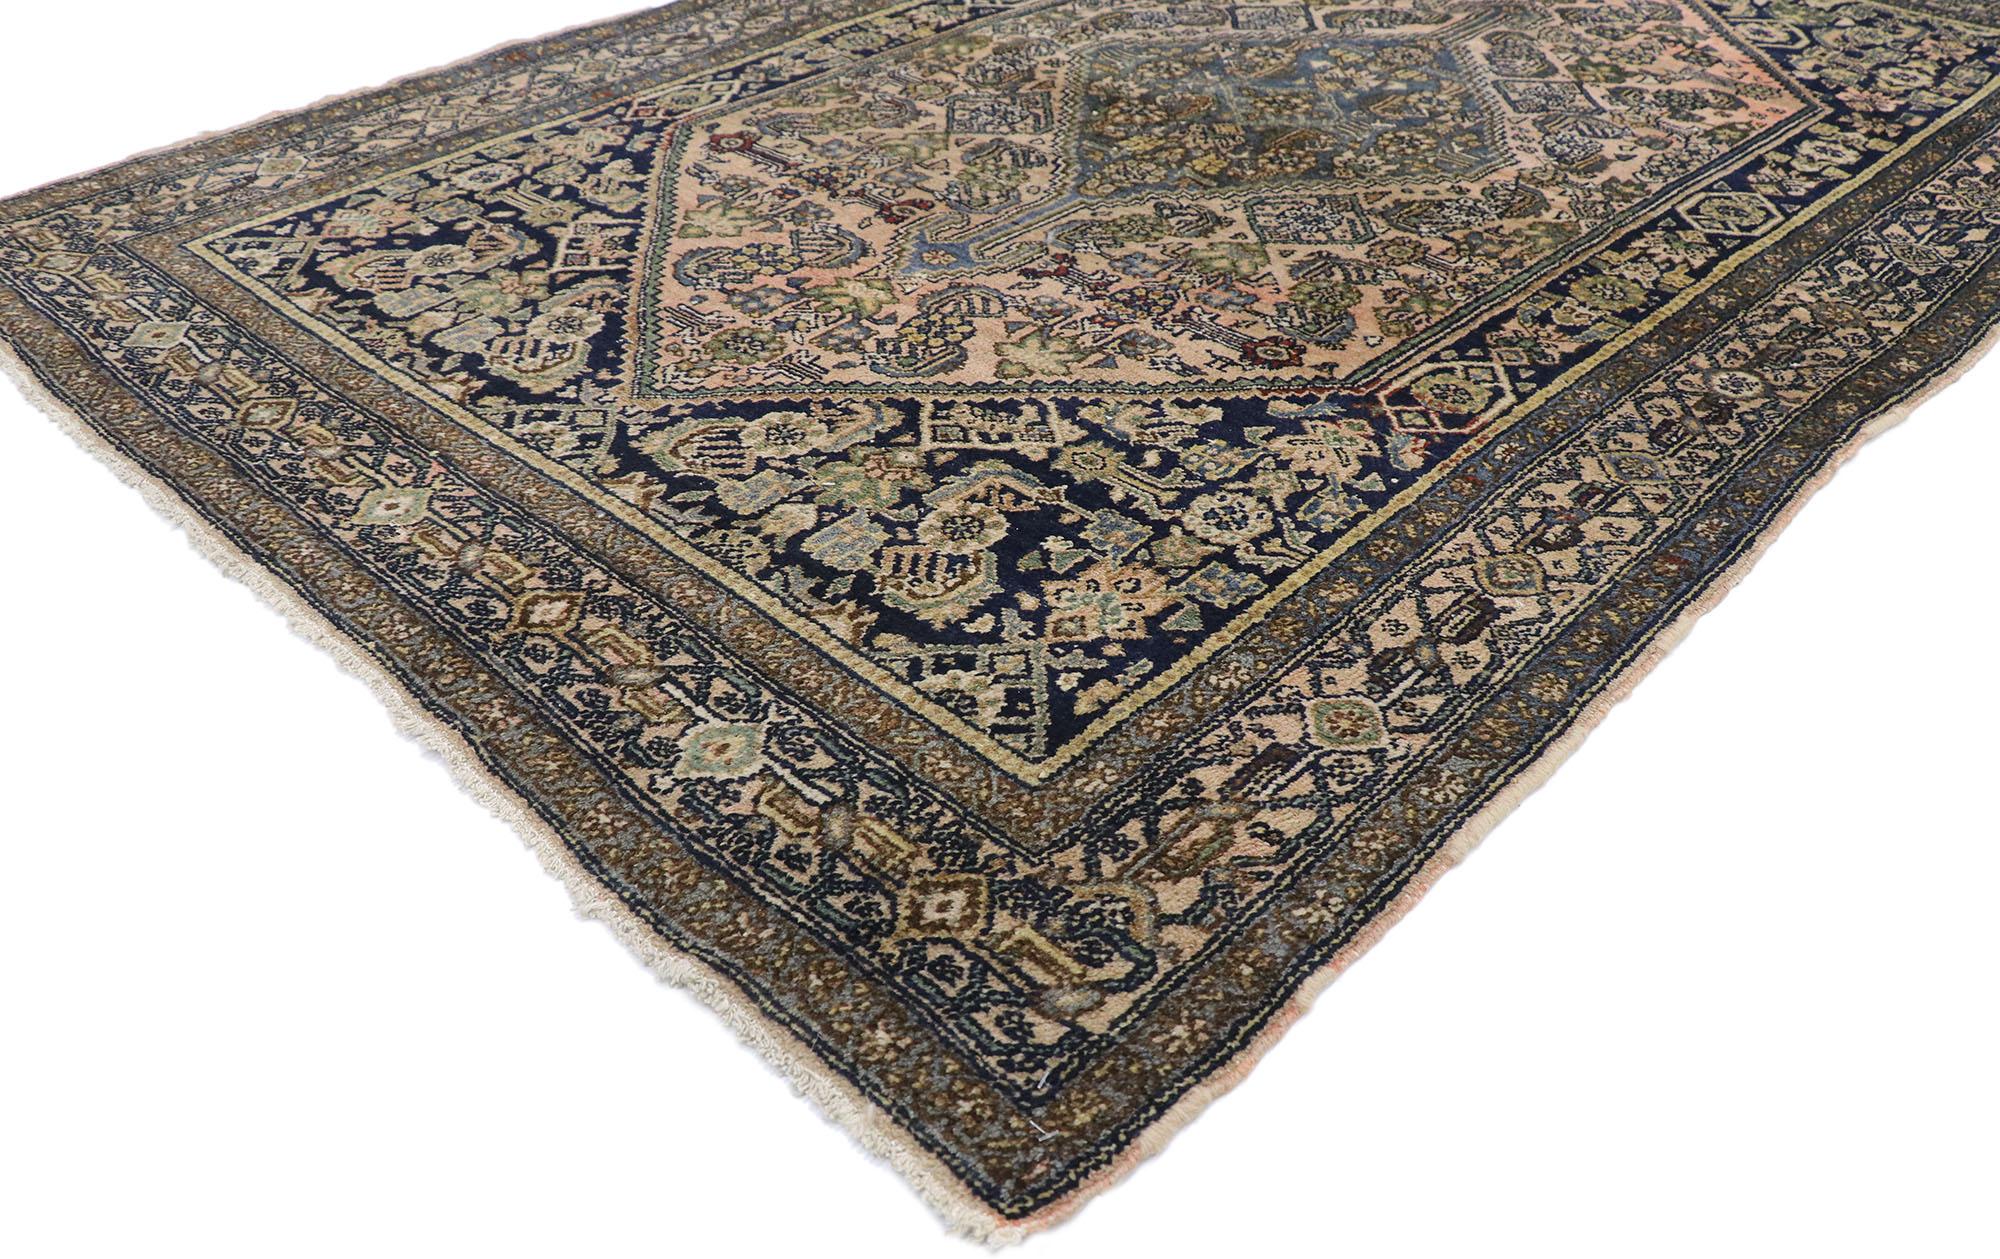 77710 Antiker persischer Bibikabad-Teppich mit viktorianischem Stil 04'05 x 06'08. Dieser handgeknüpfte antike persische Bibikabad-Teppich aus Wolle ist von müheloser Schönheit und wird Sie beeindrucken. Das hellrosa Feld ist mit einer großflächigen